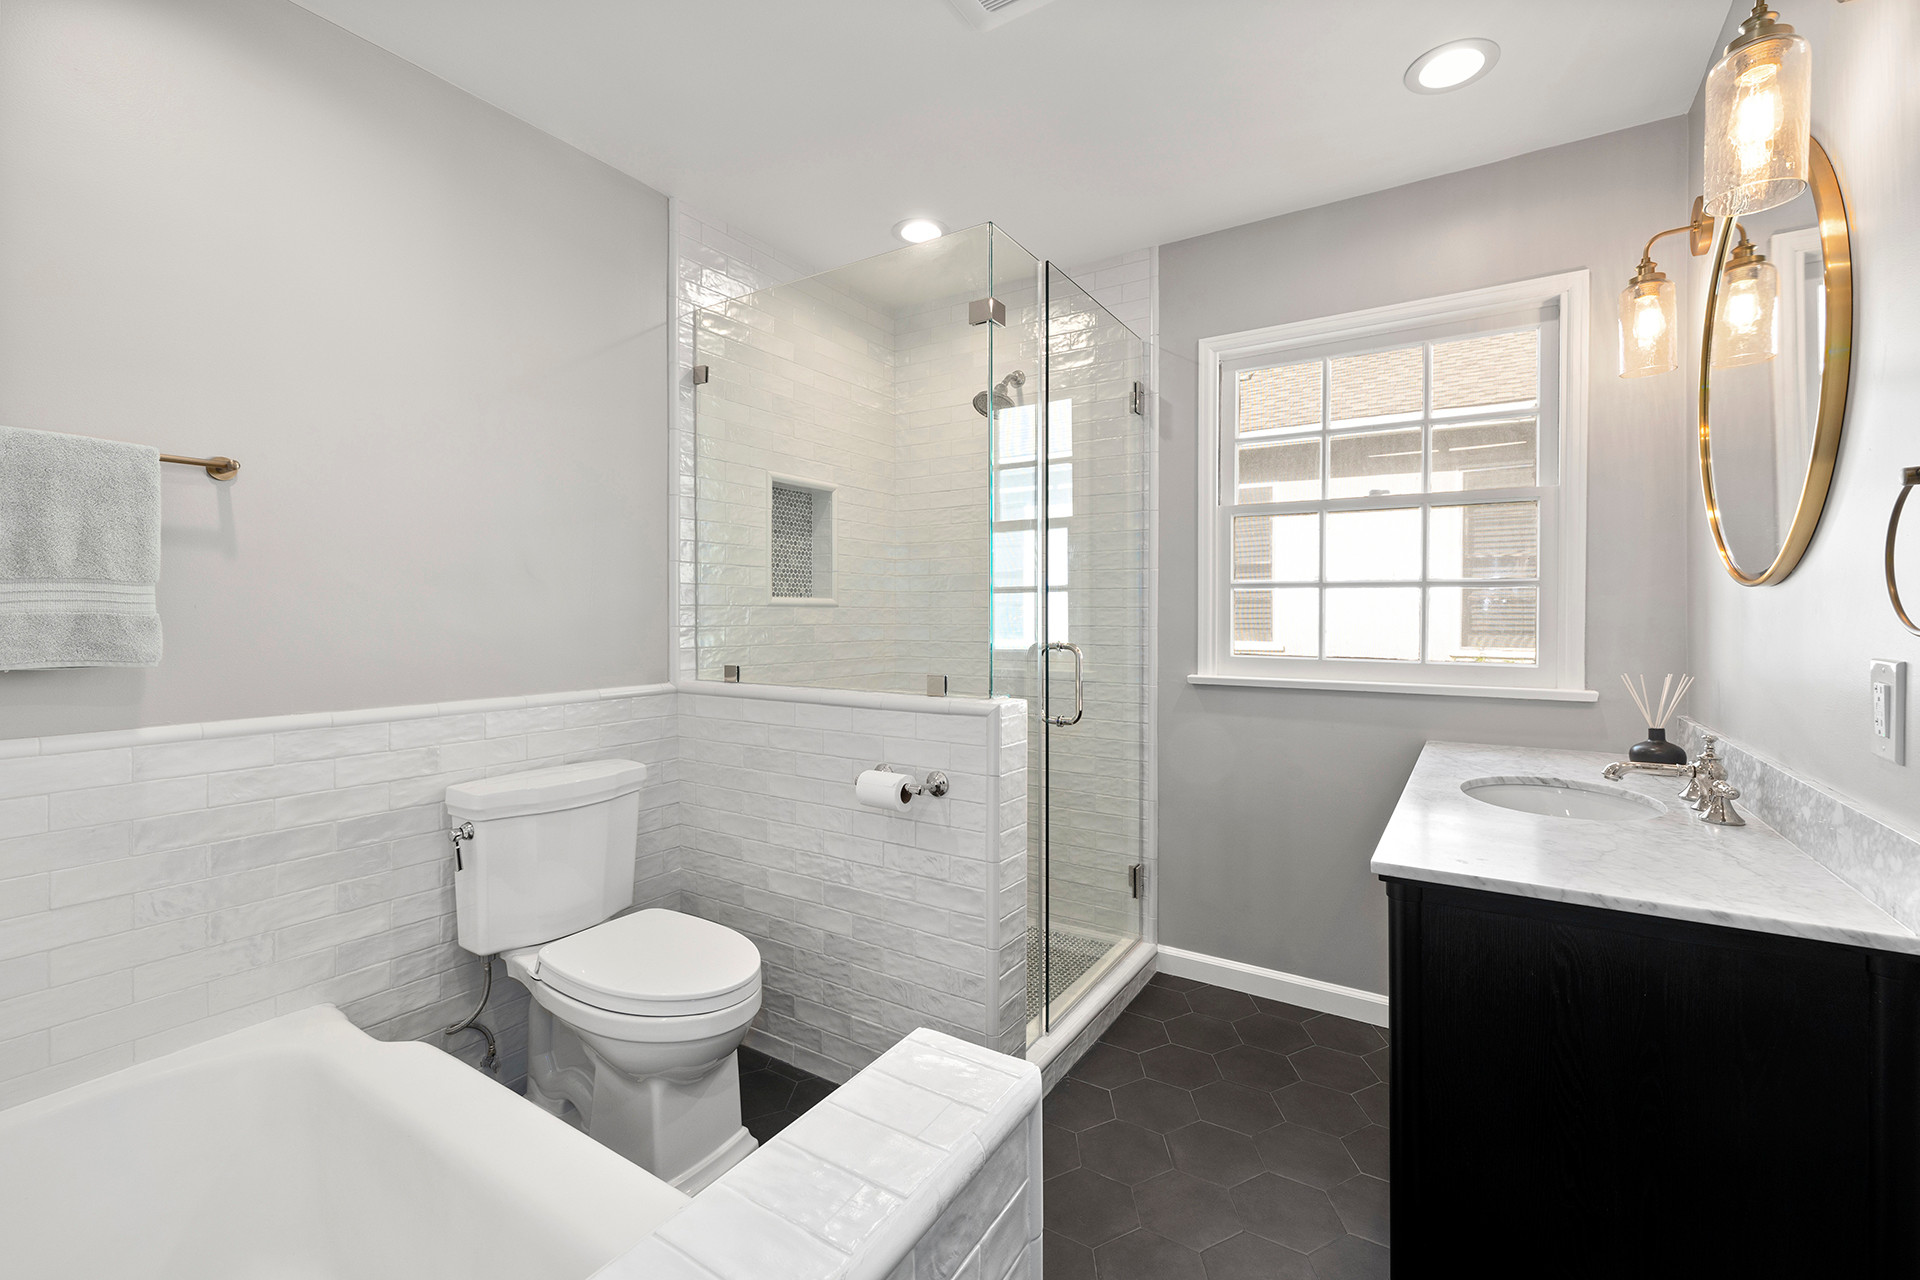 Pasadena, CA / Complete Bathroom Remodel